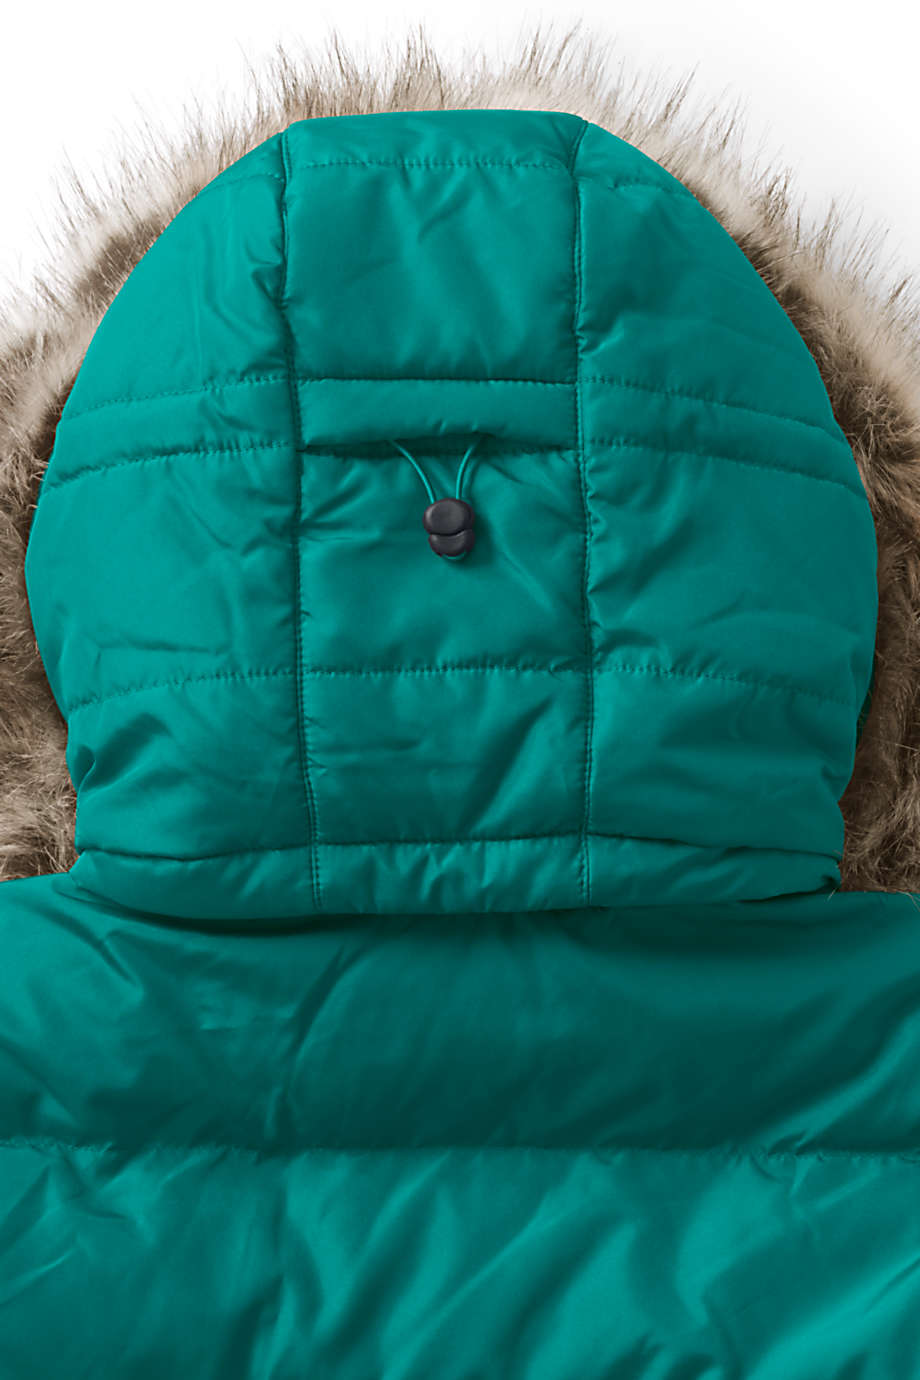 Lands' End Women's Plus Size Winter Long Down Coat with Faux Fur Hood